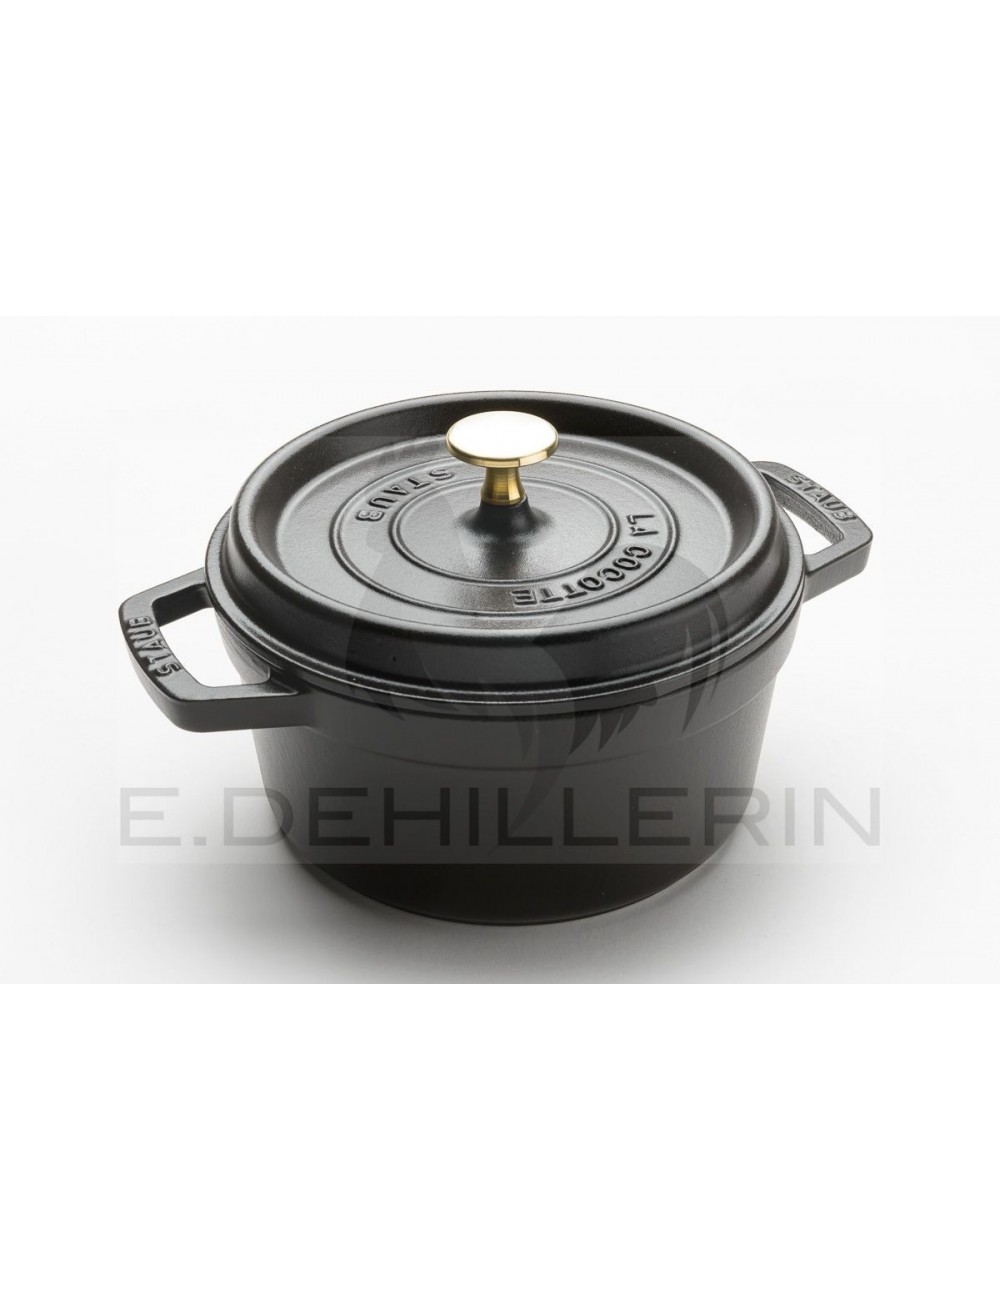 https://www.edehillerin.fr/699-large_default/casserole-cast-iron-round-black-staub.jpg